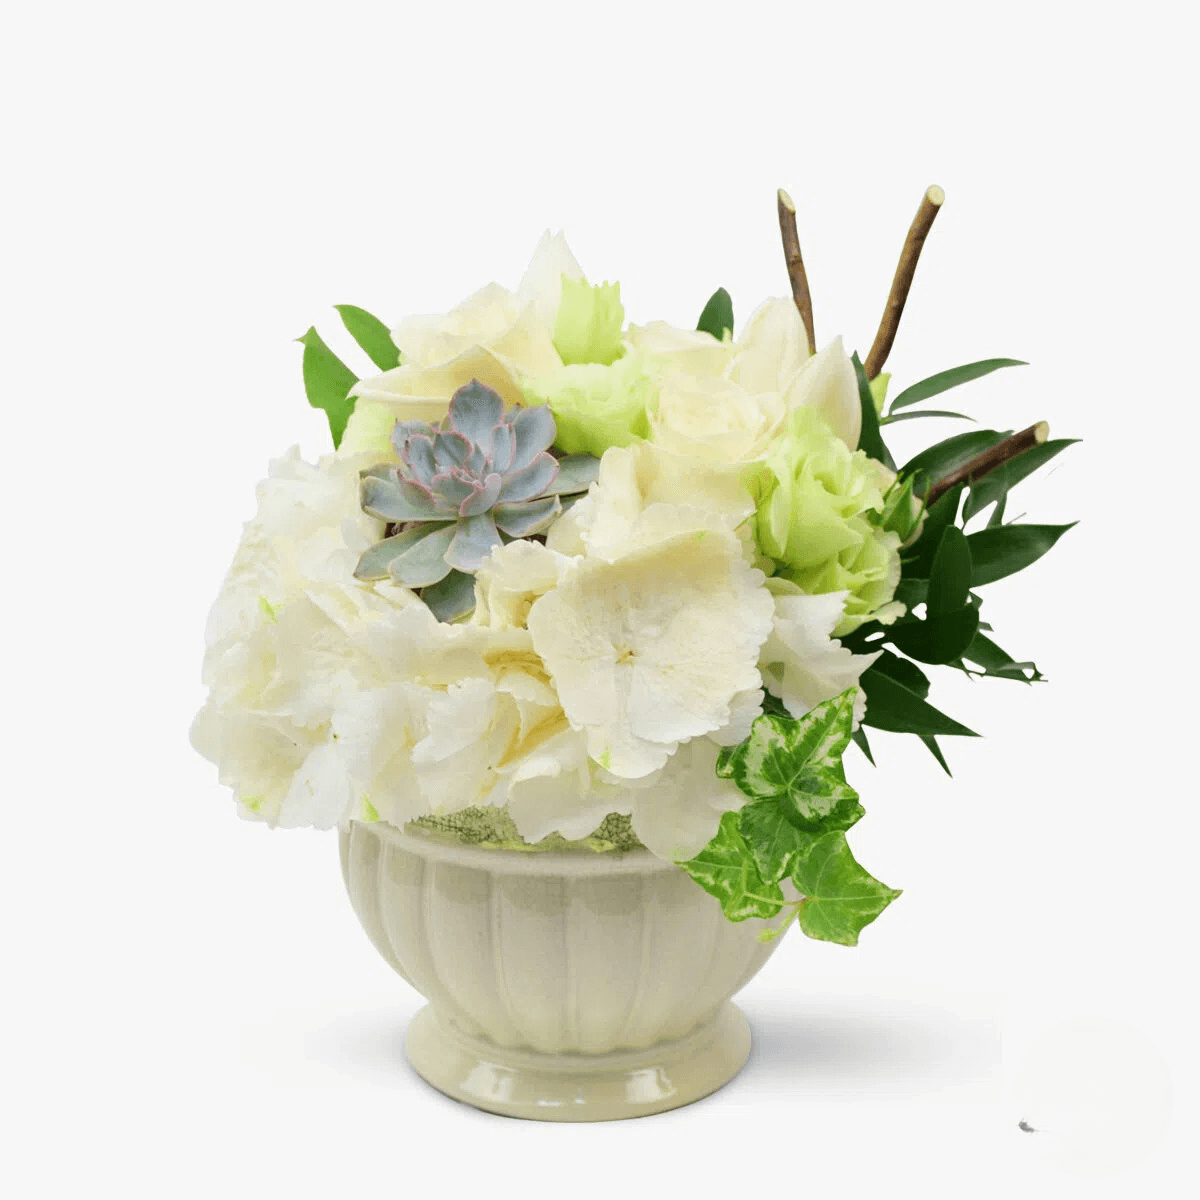 Art Nouveau cu hortensie alba, trandafiri albi, lisianthus alb, minirosa alba